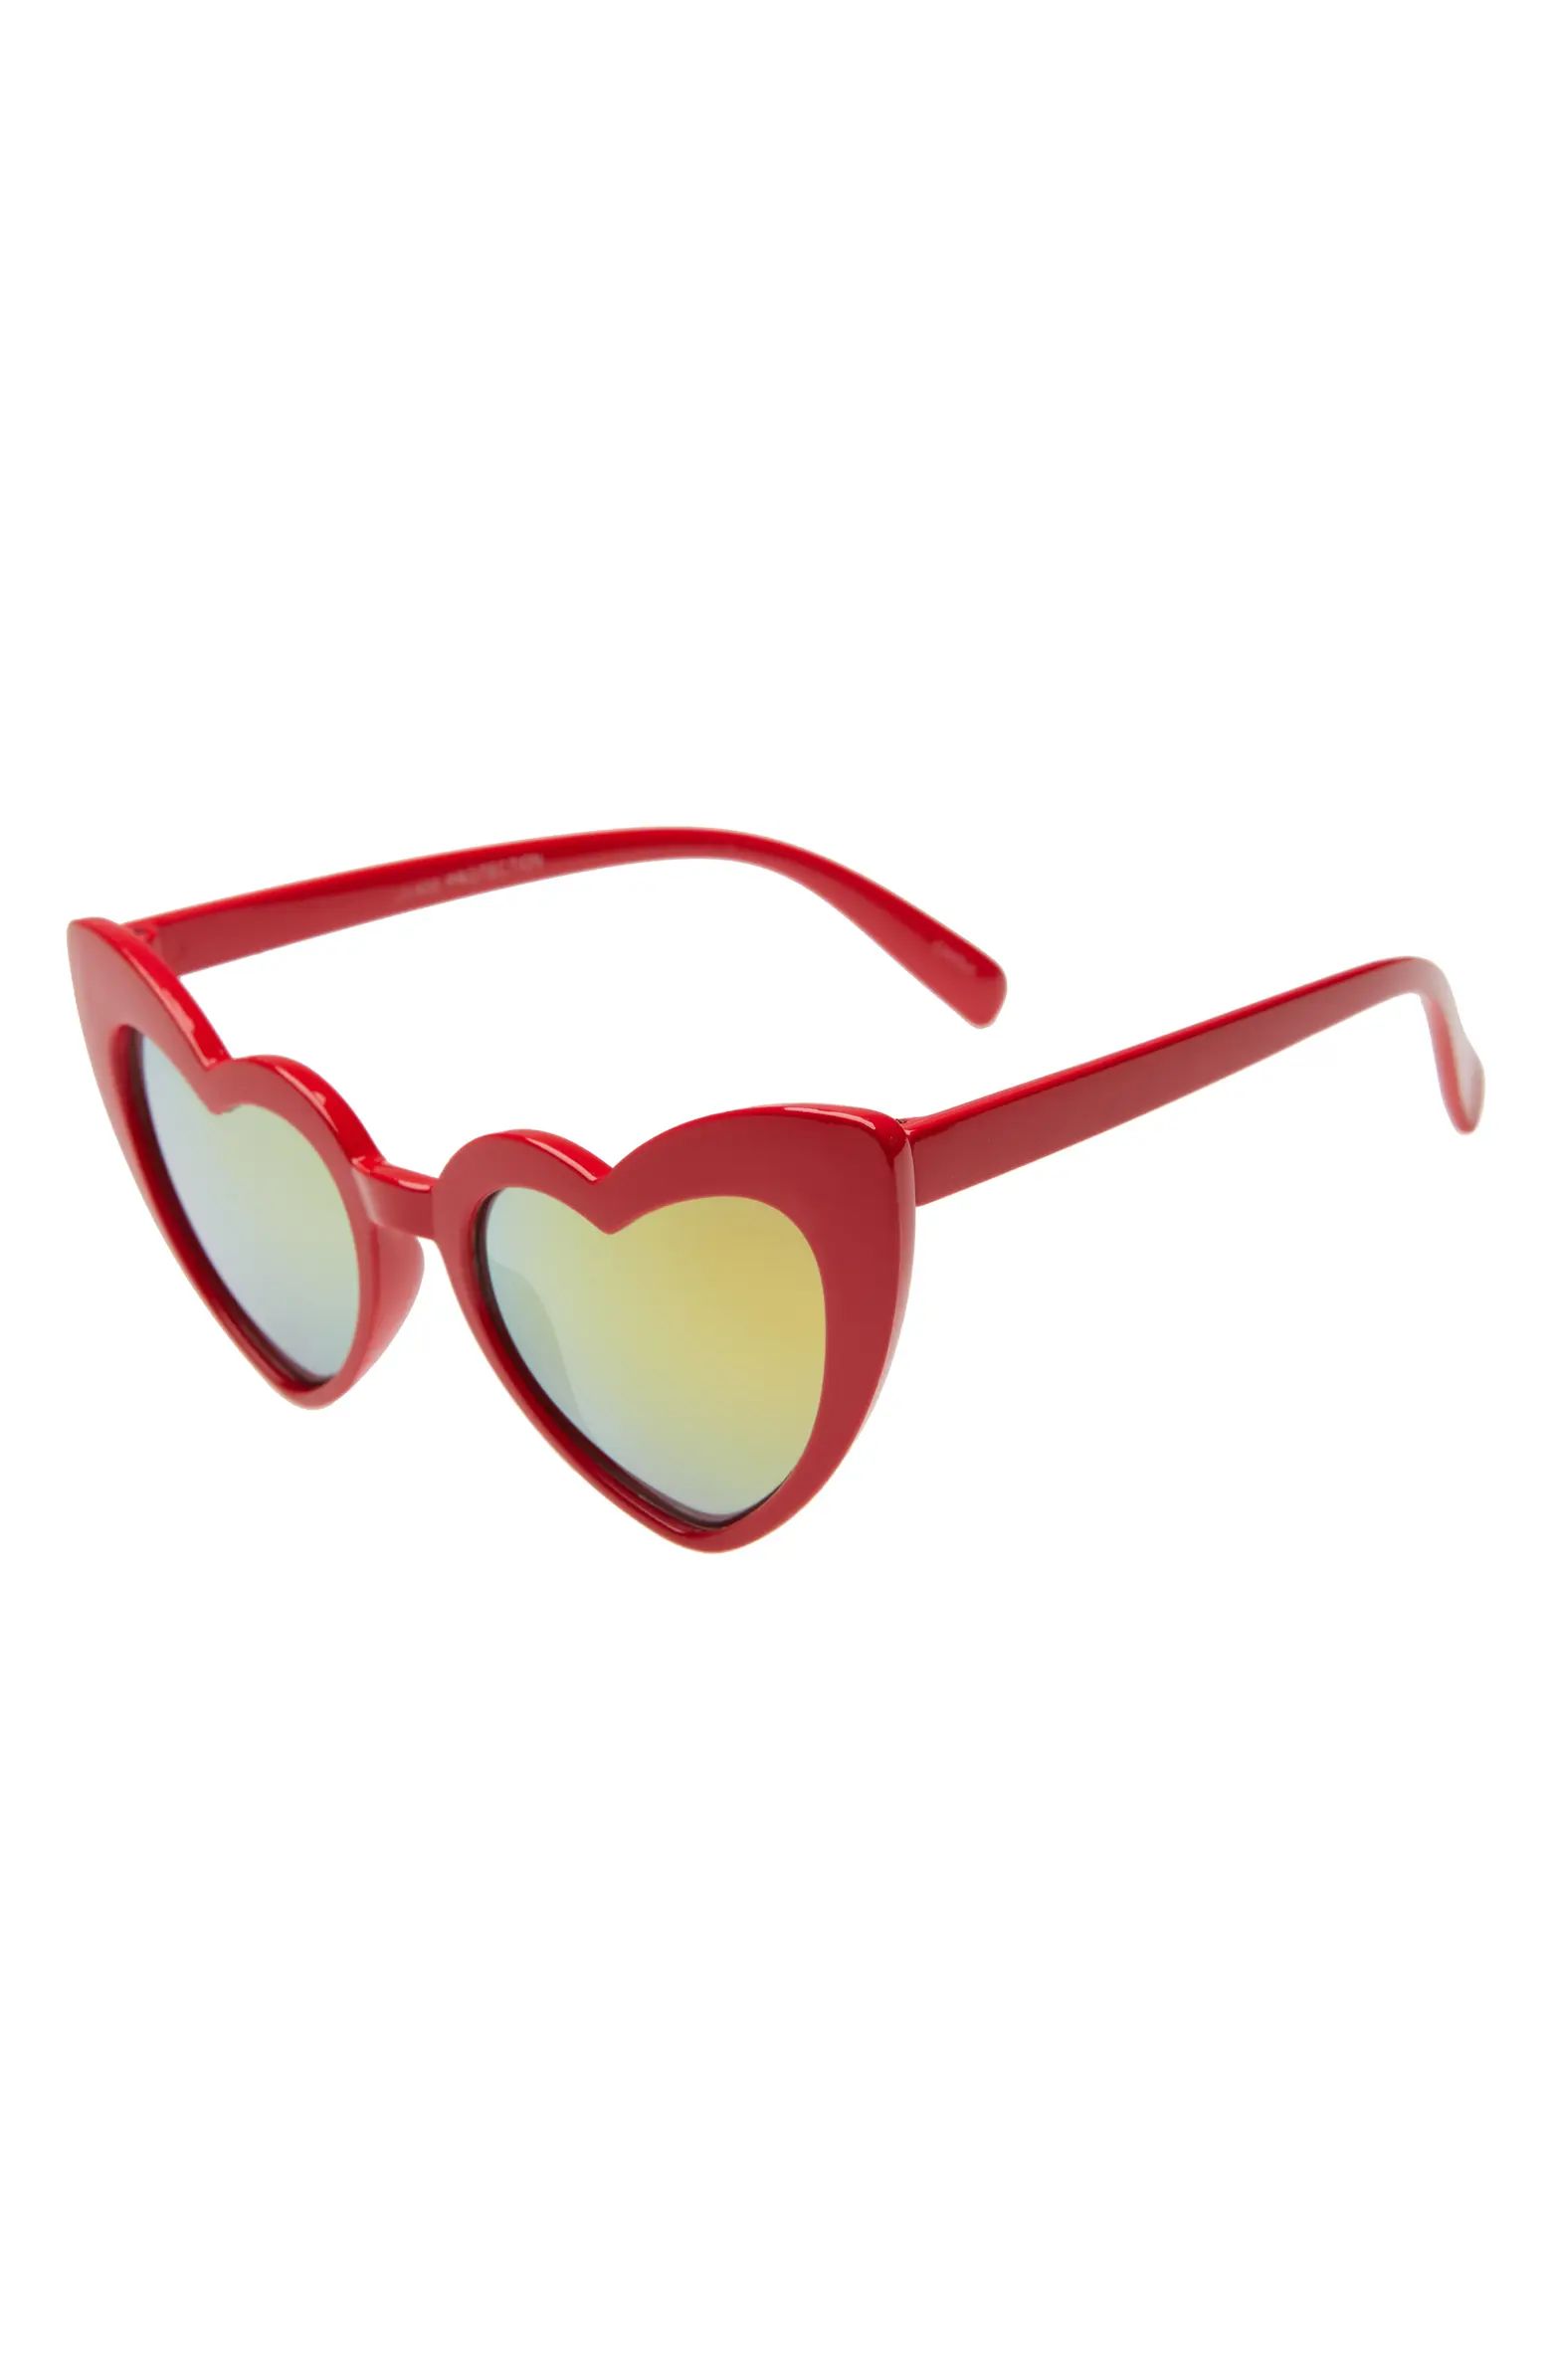 Rad + Refined Heart Sunglasses | Nordstrom | Nordstrom